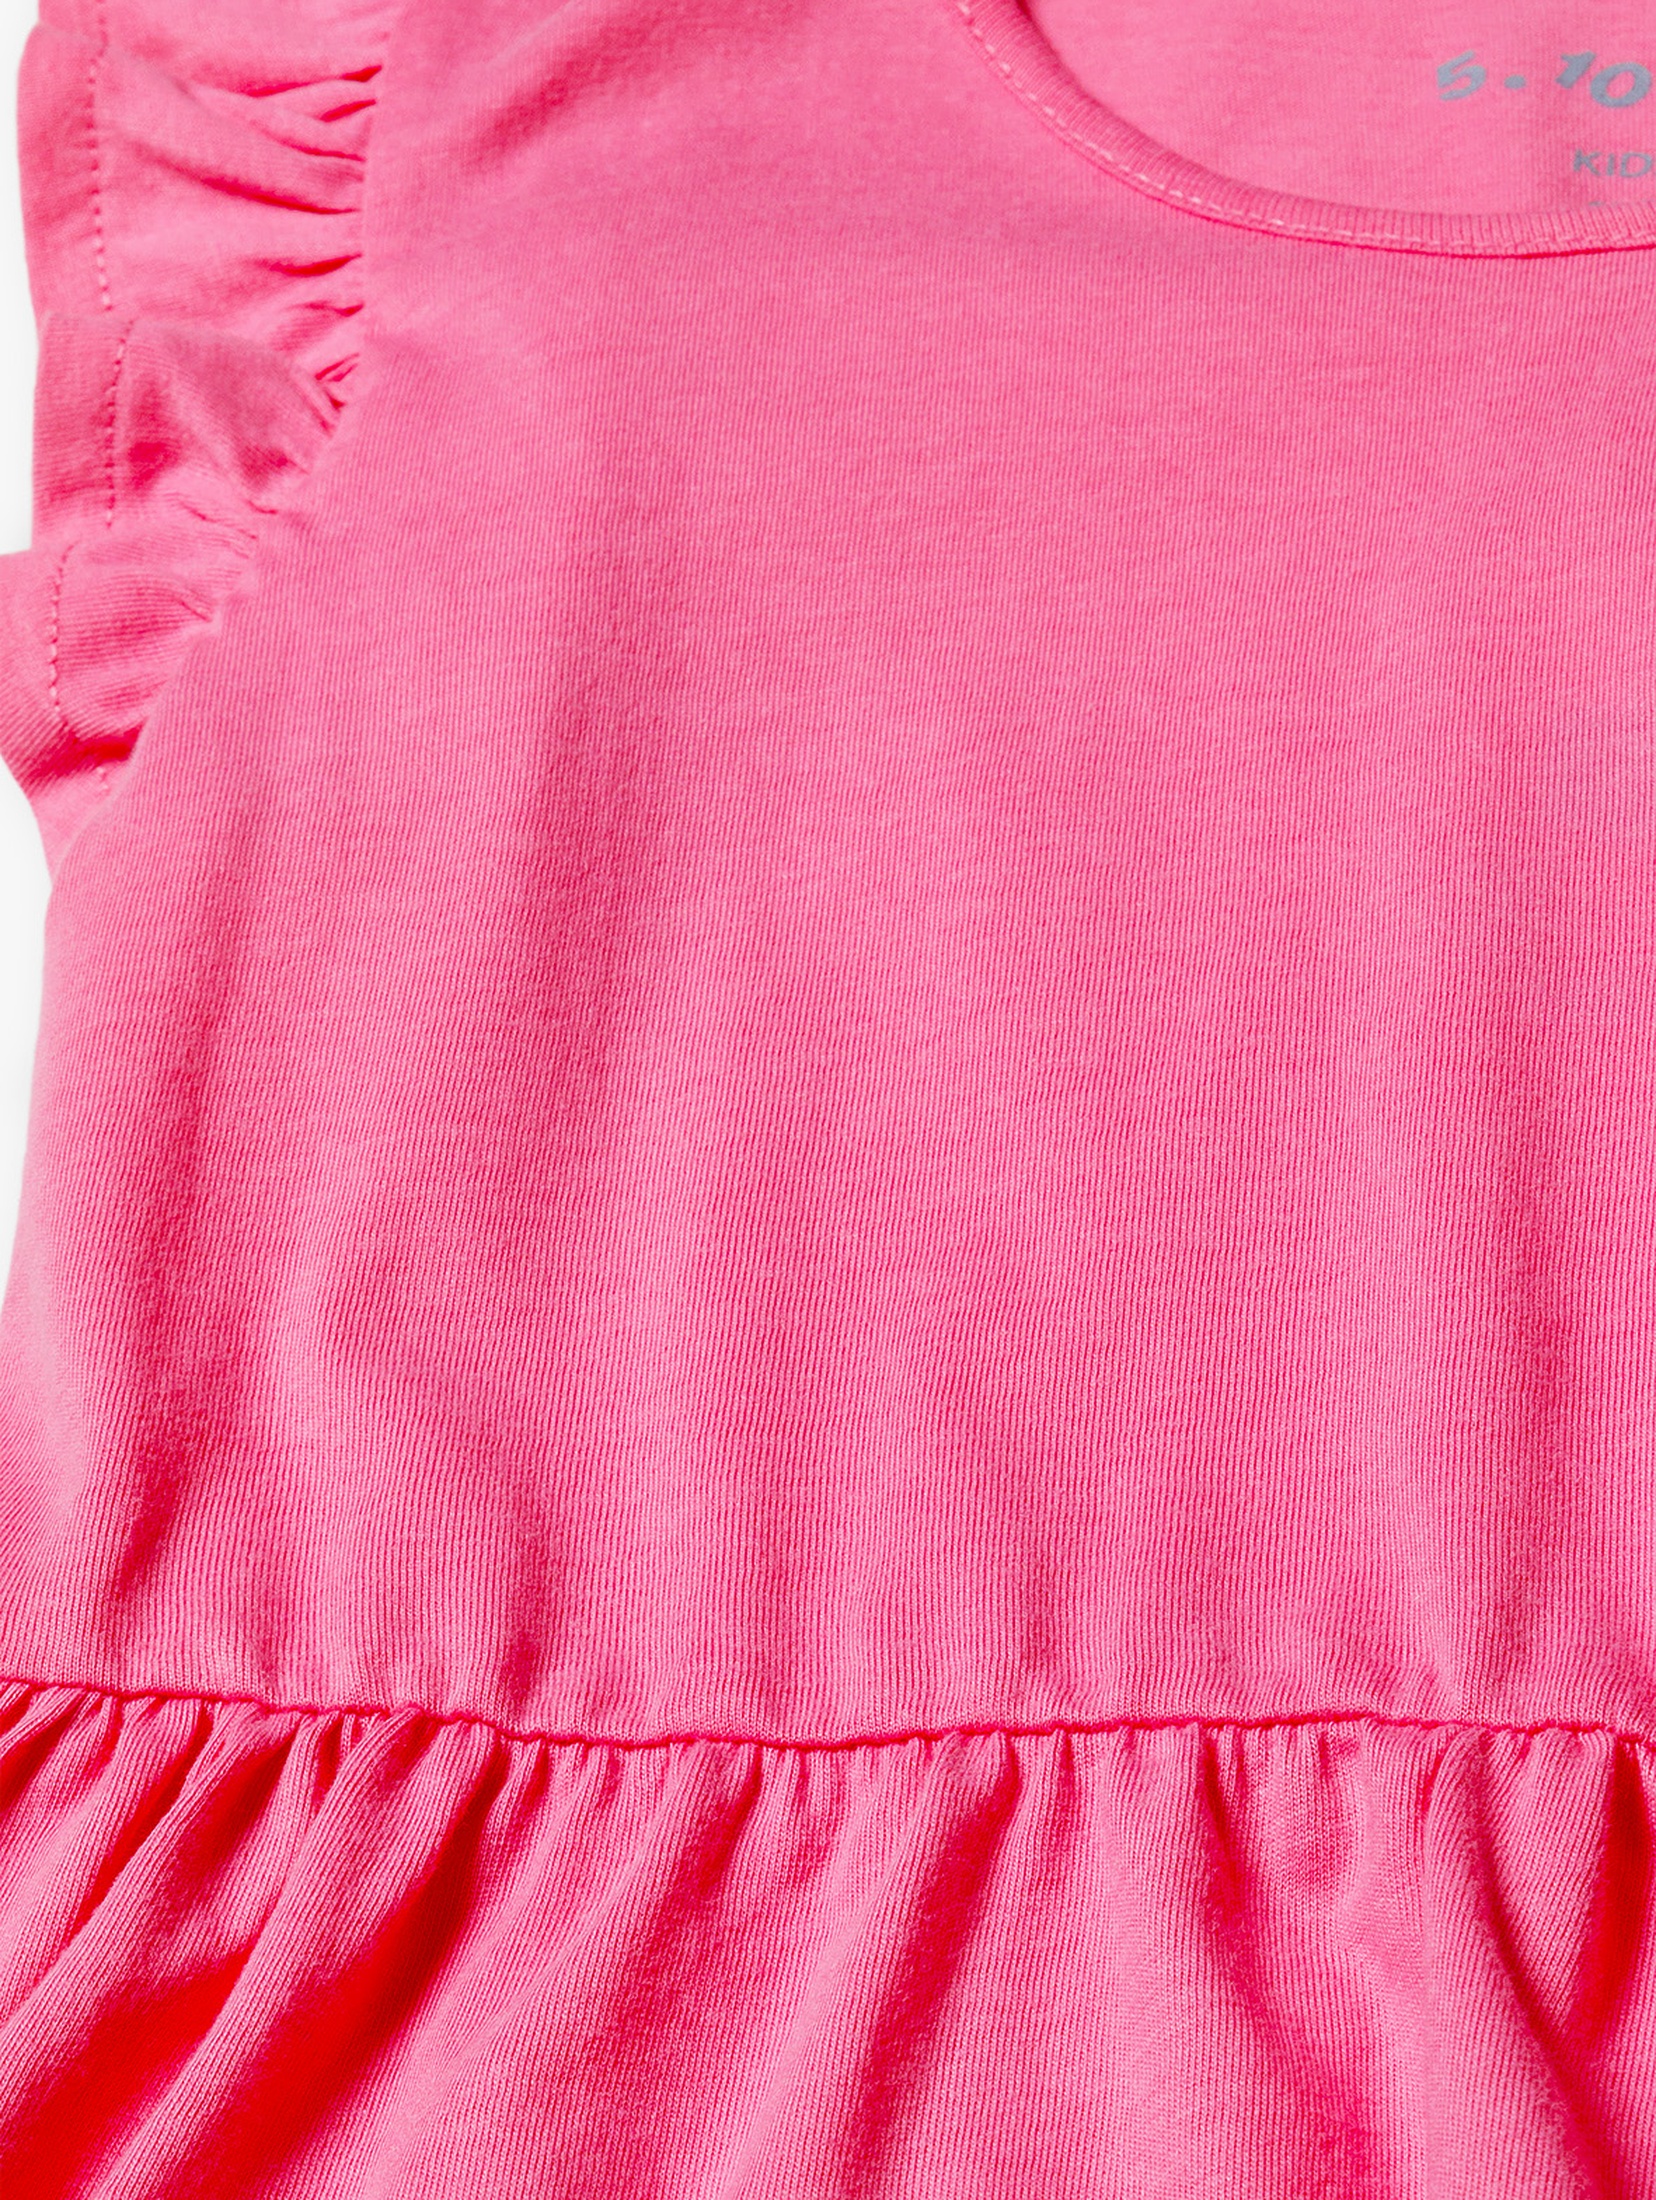 Różowa bawełniana sukienka dziewczęca na lato - 5.10.15.